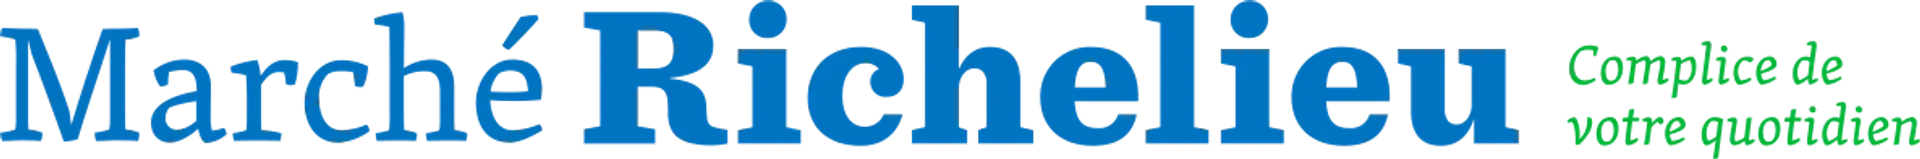 MARCHÉ RICHELIEU logo